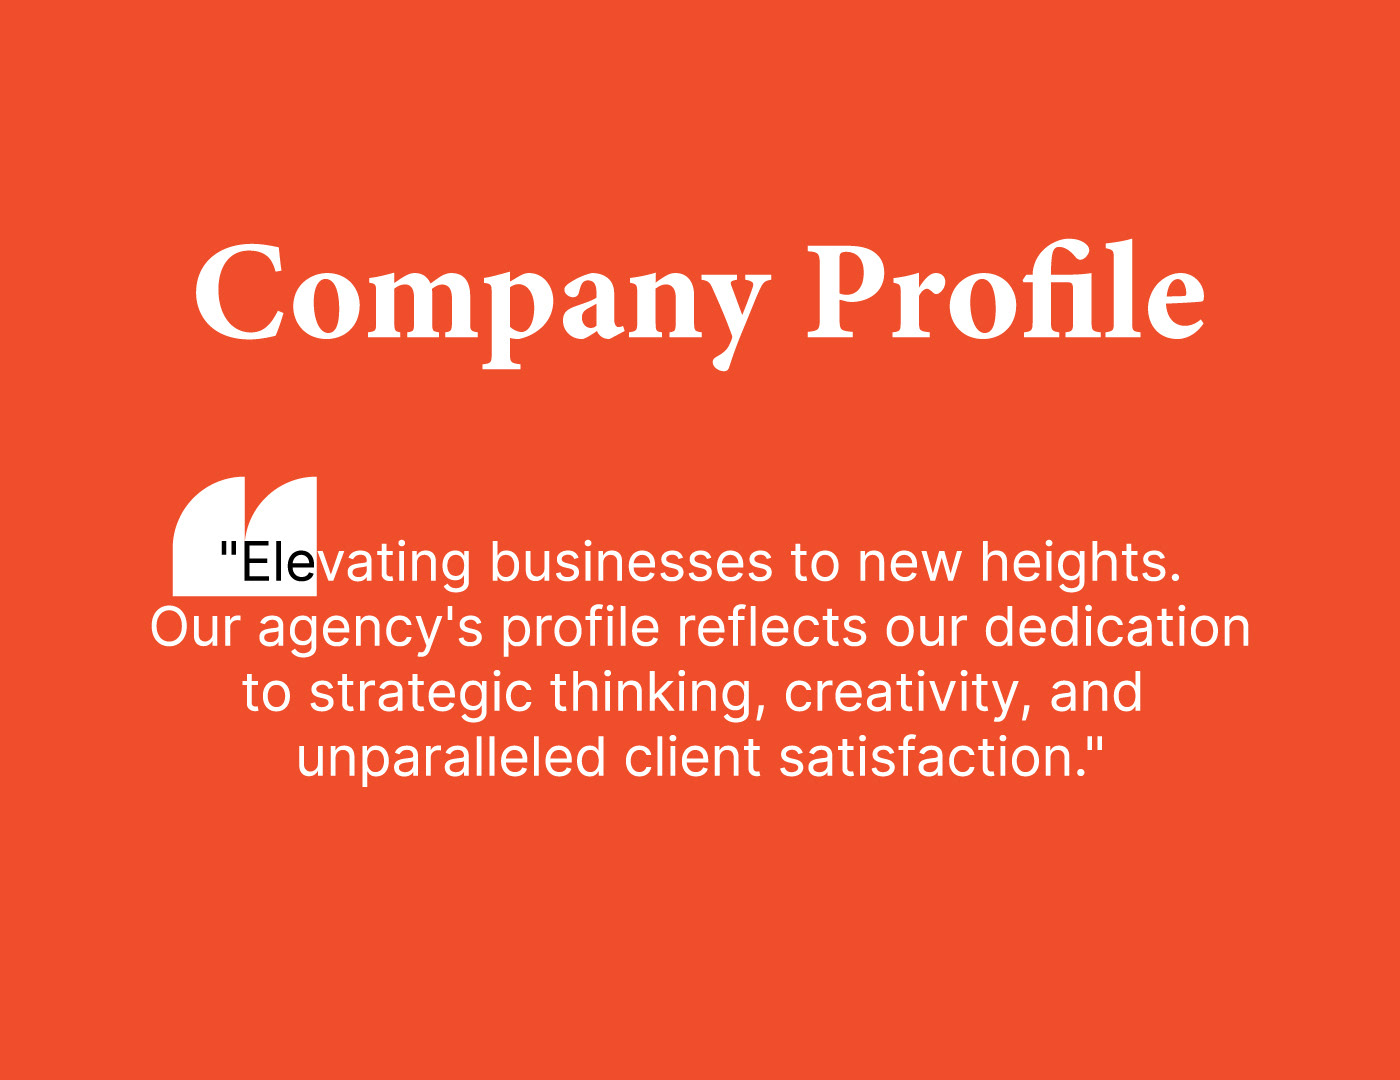 Corporate, Company profile